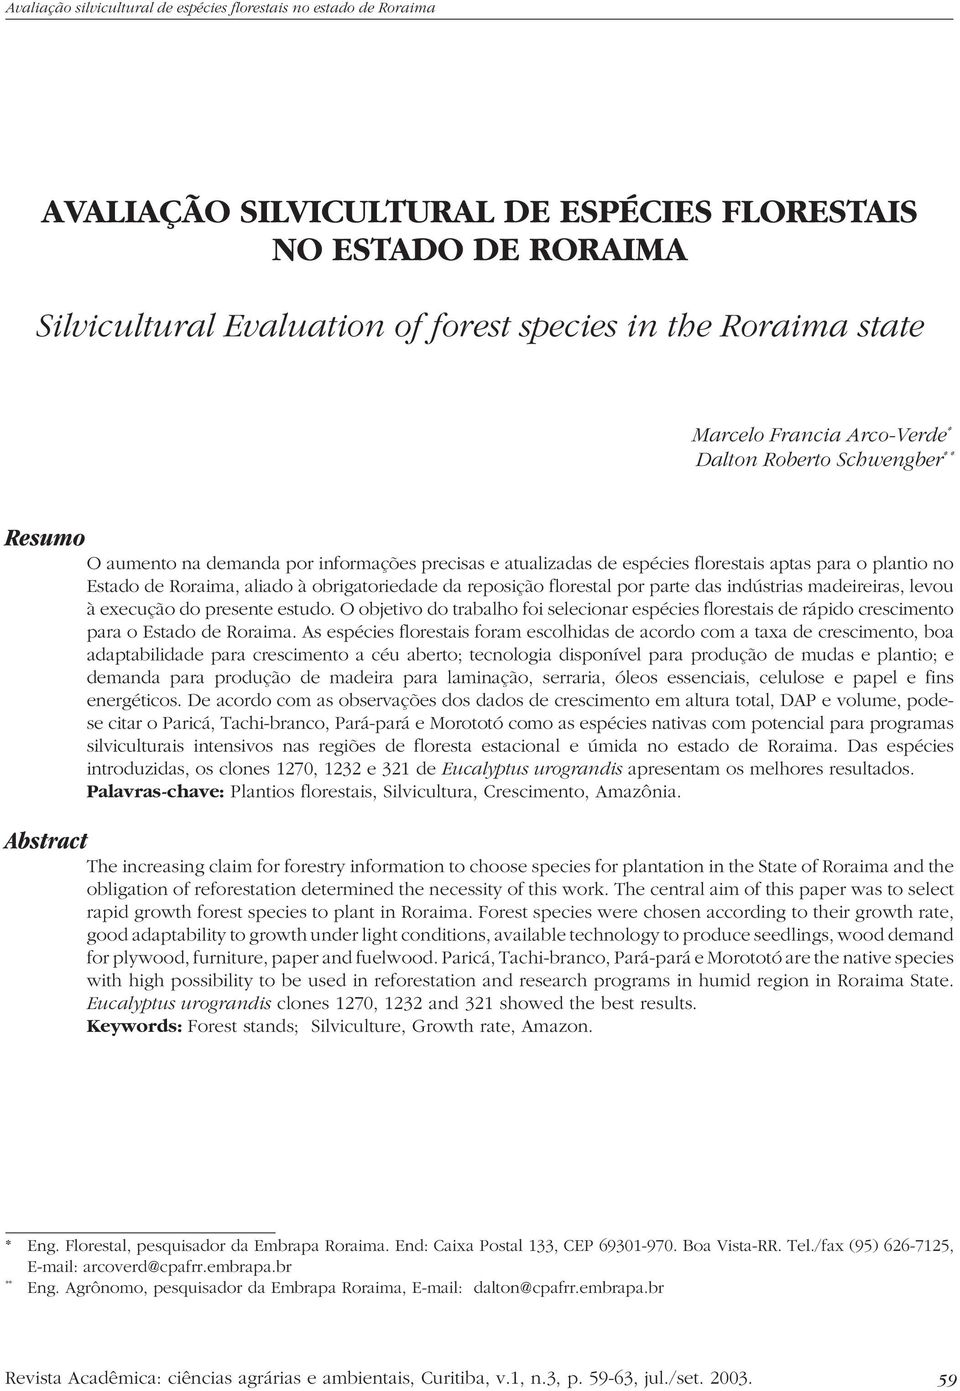 madeireiras, levou à execução do presente estudo. O objetivo do trabalho foi selecionar espécies florestais de rápido crescimento para o Estado de Roraima.